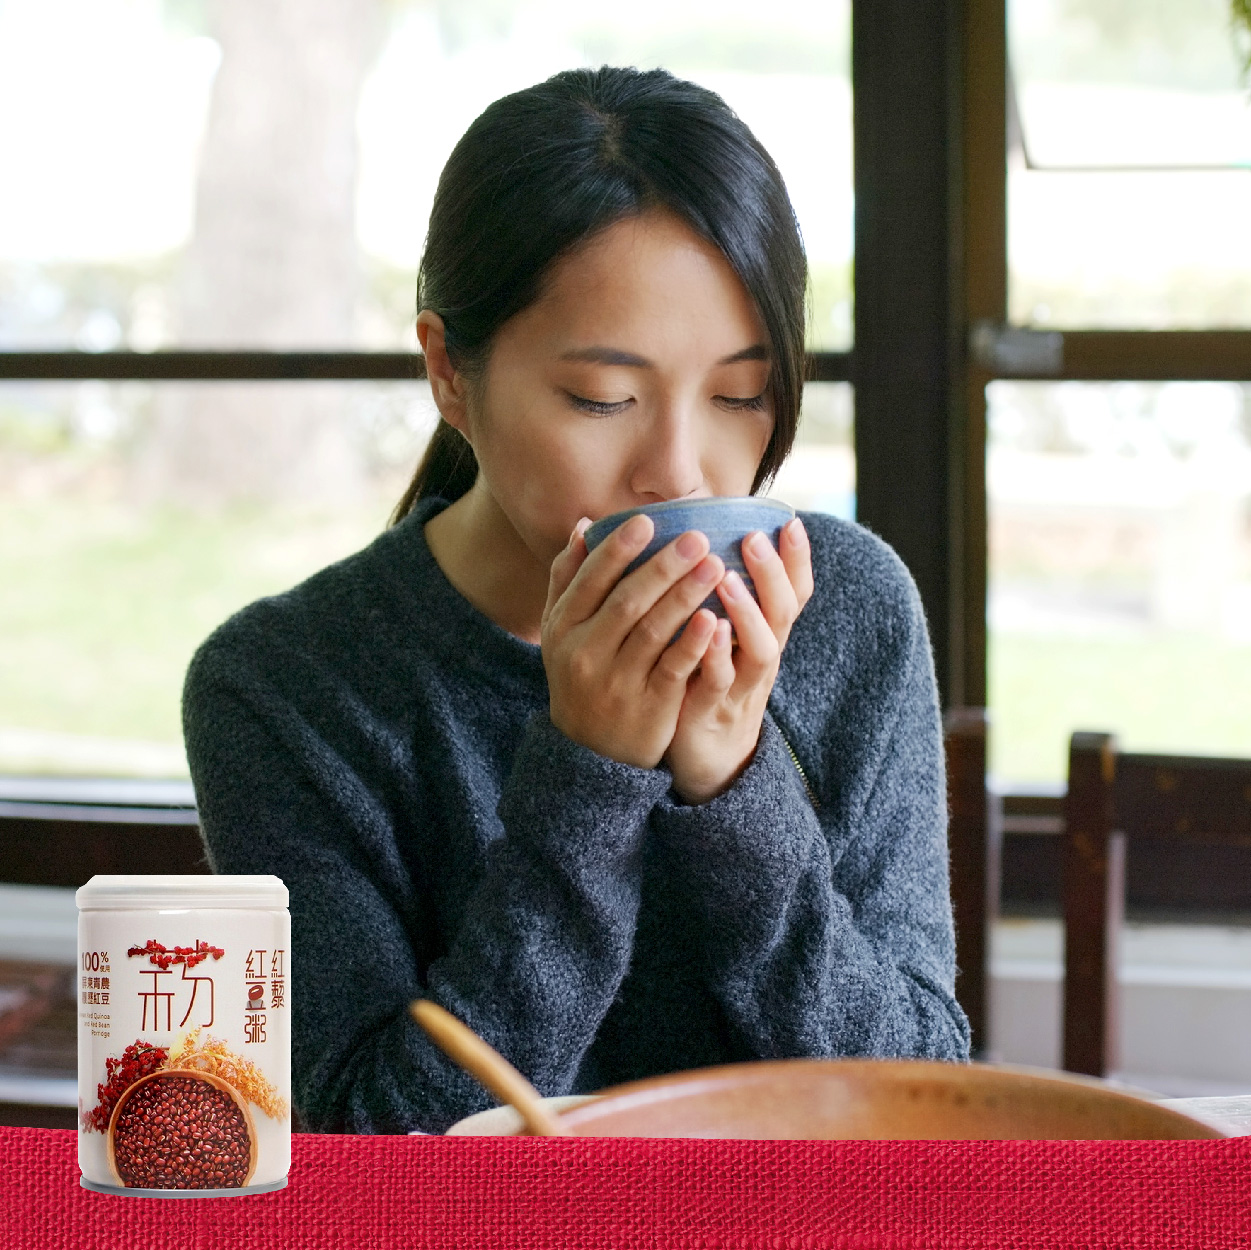 屏東縣農會  紅藜紅豆粥  獨特清香口感滑順  即開即食  隨手可得的健康好味道